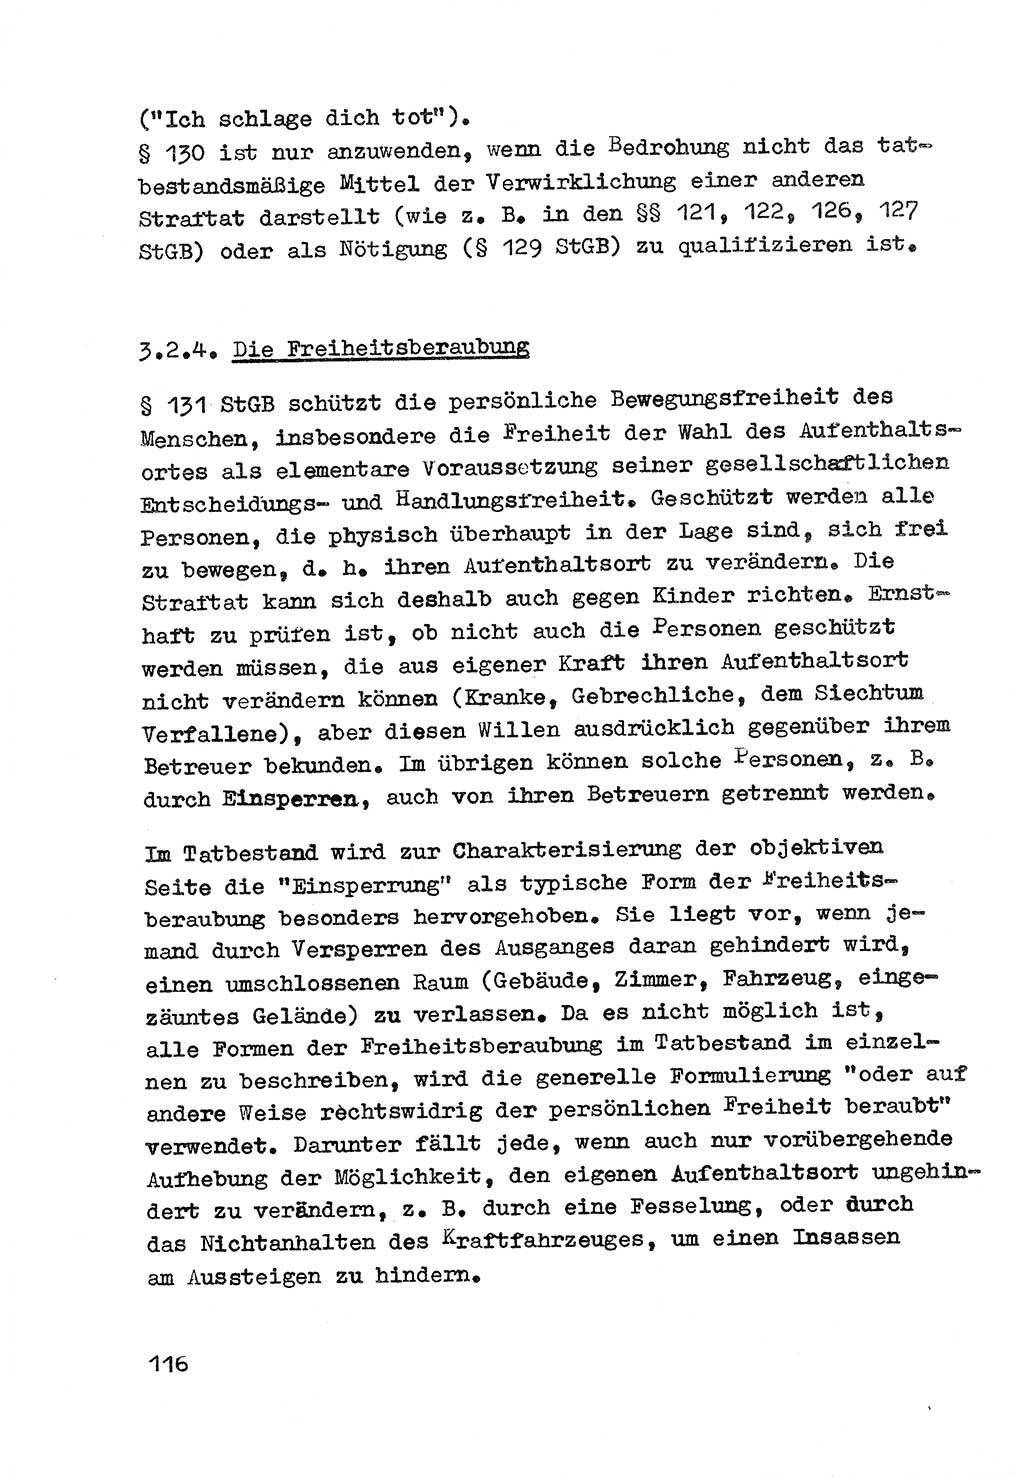 Strafrecht der DDR (Deutsche Demokratische Republik), Besonderer Teil, Lehrmaterial, Heft 3 1969, Seite 116 (Strafr. DDR BT Lehrmat. H. 3 1969, S. 116)